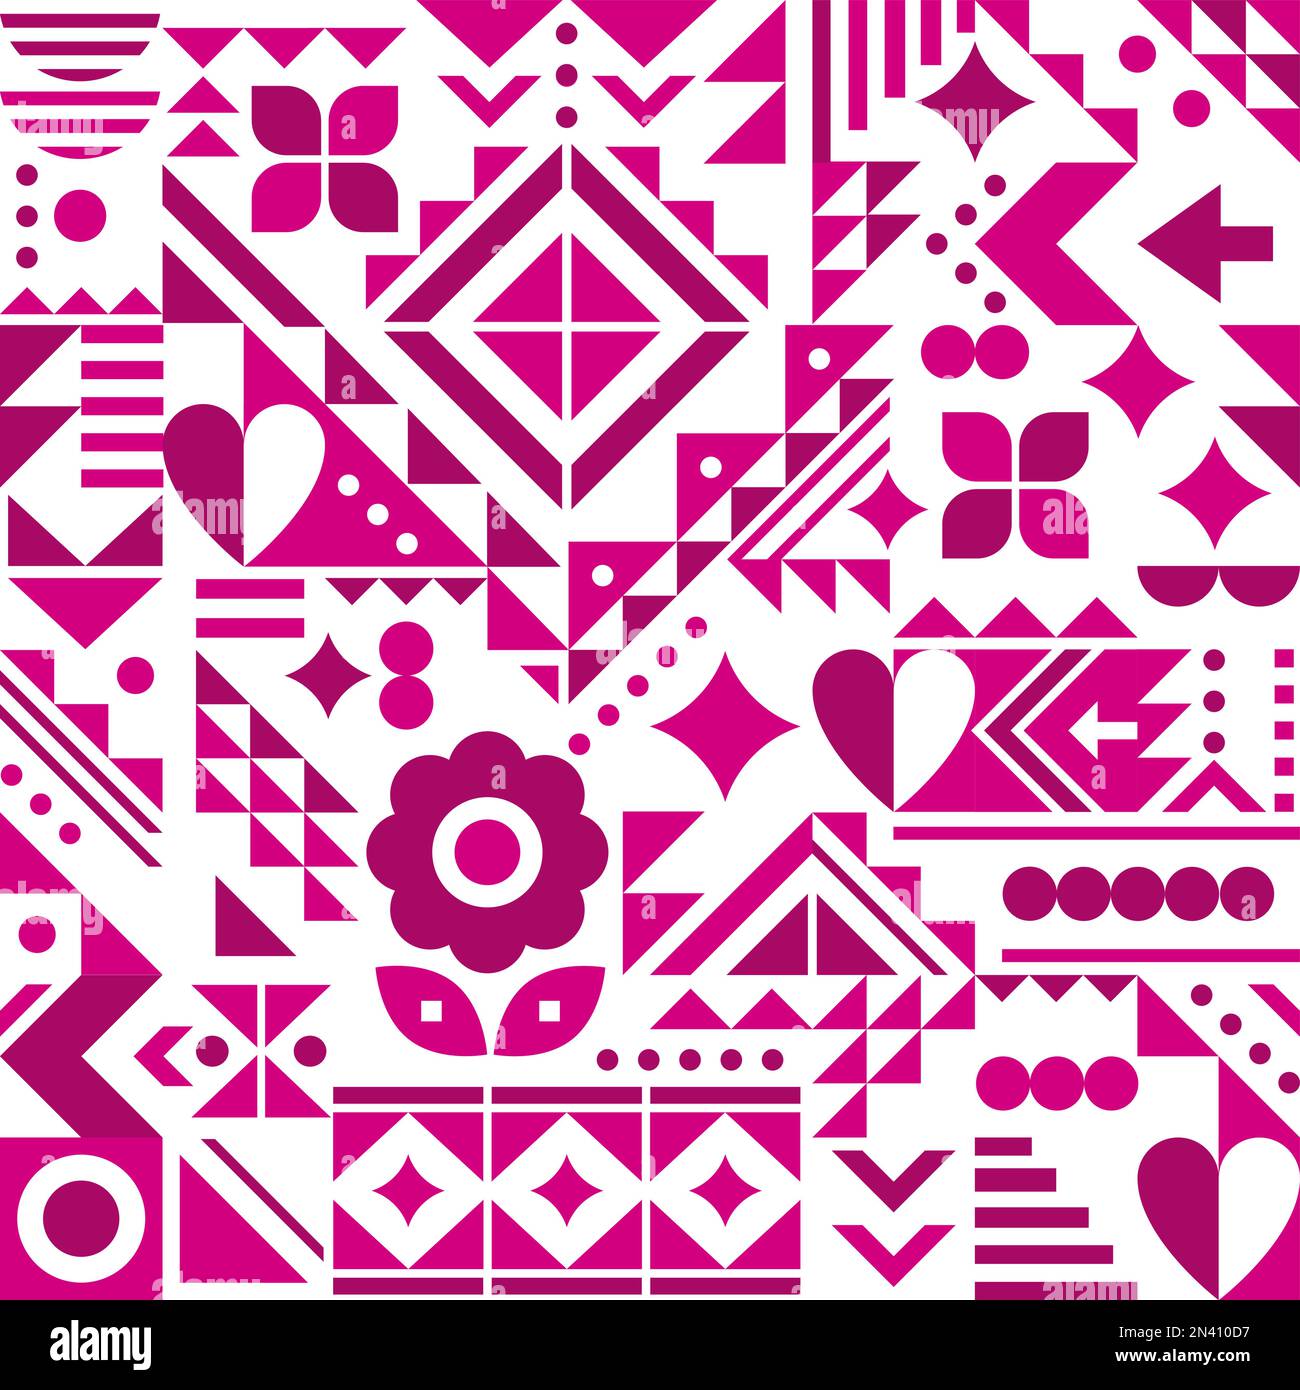 Von Bauhaus inspiriertes nahtloses Vektormuster mit Herzen, Blumen und geometrischen Formen in Pink auf Weiß, modernes abstraktes Design Stock Vektor